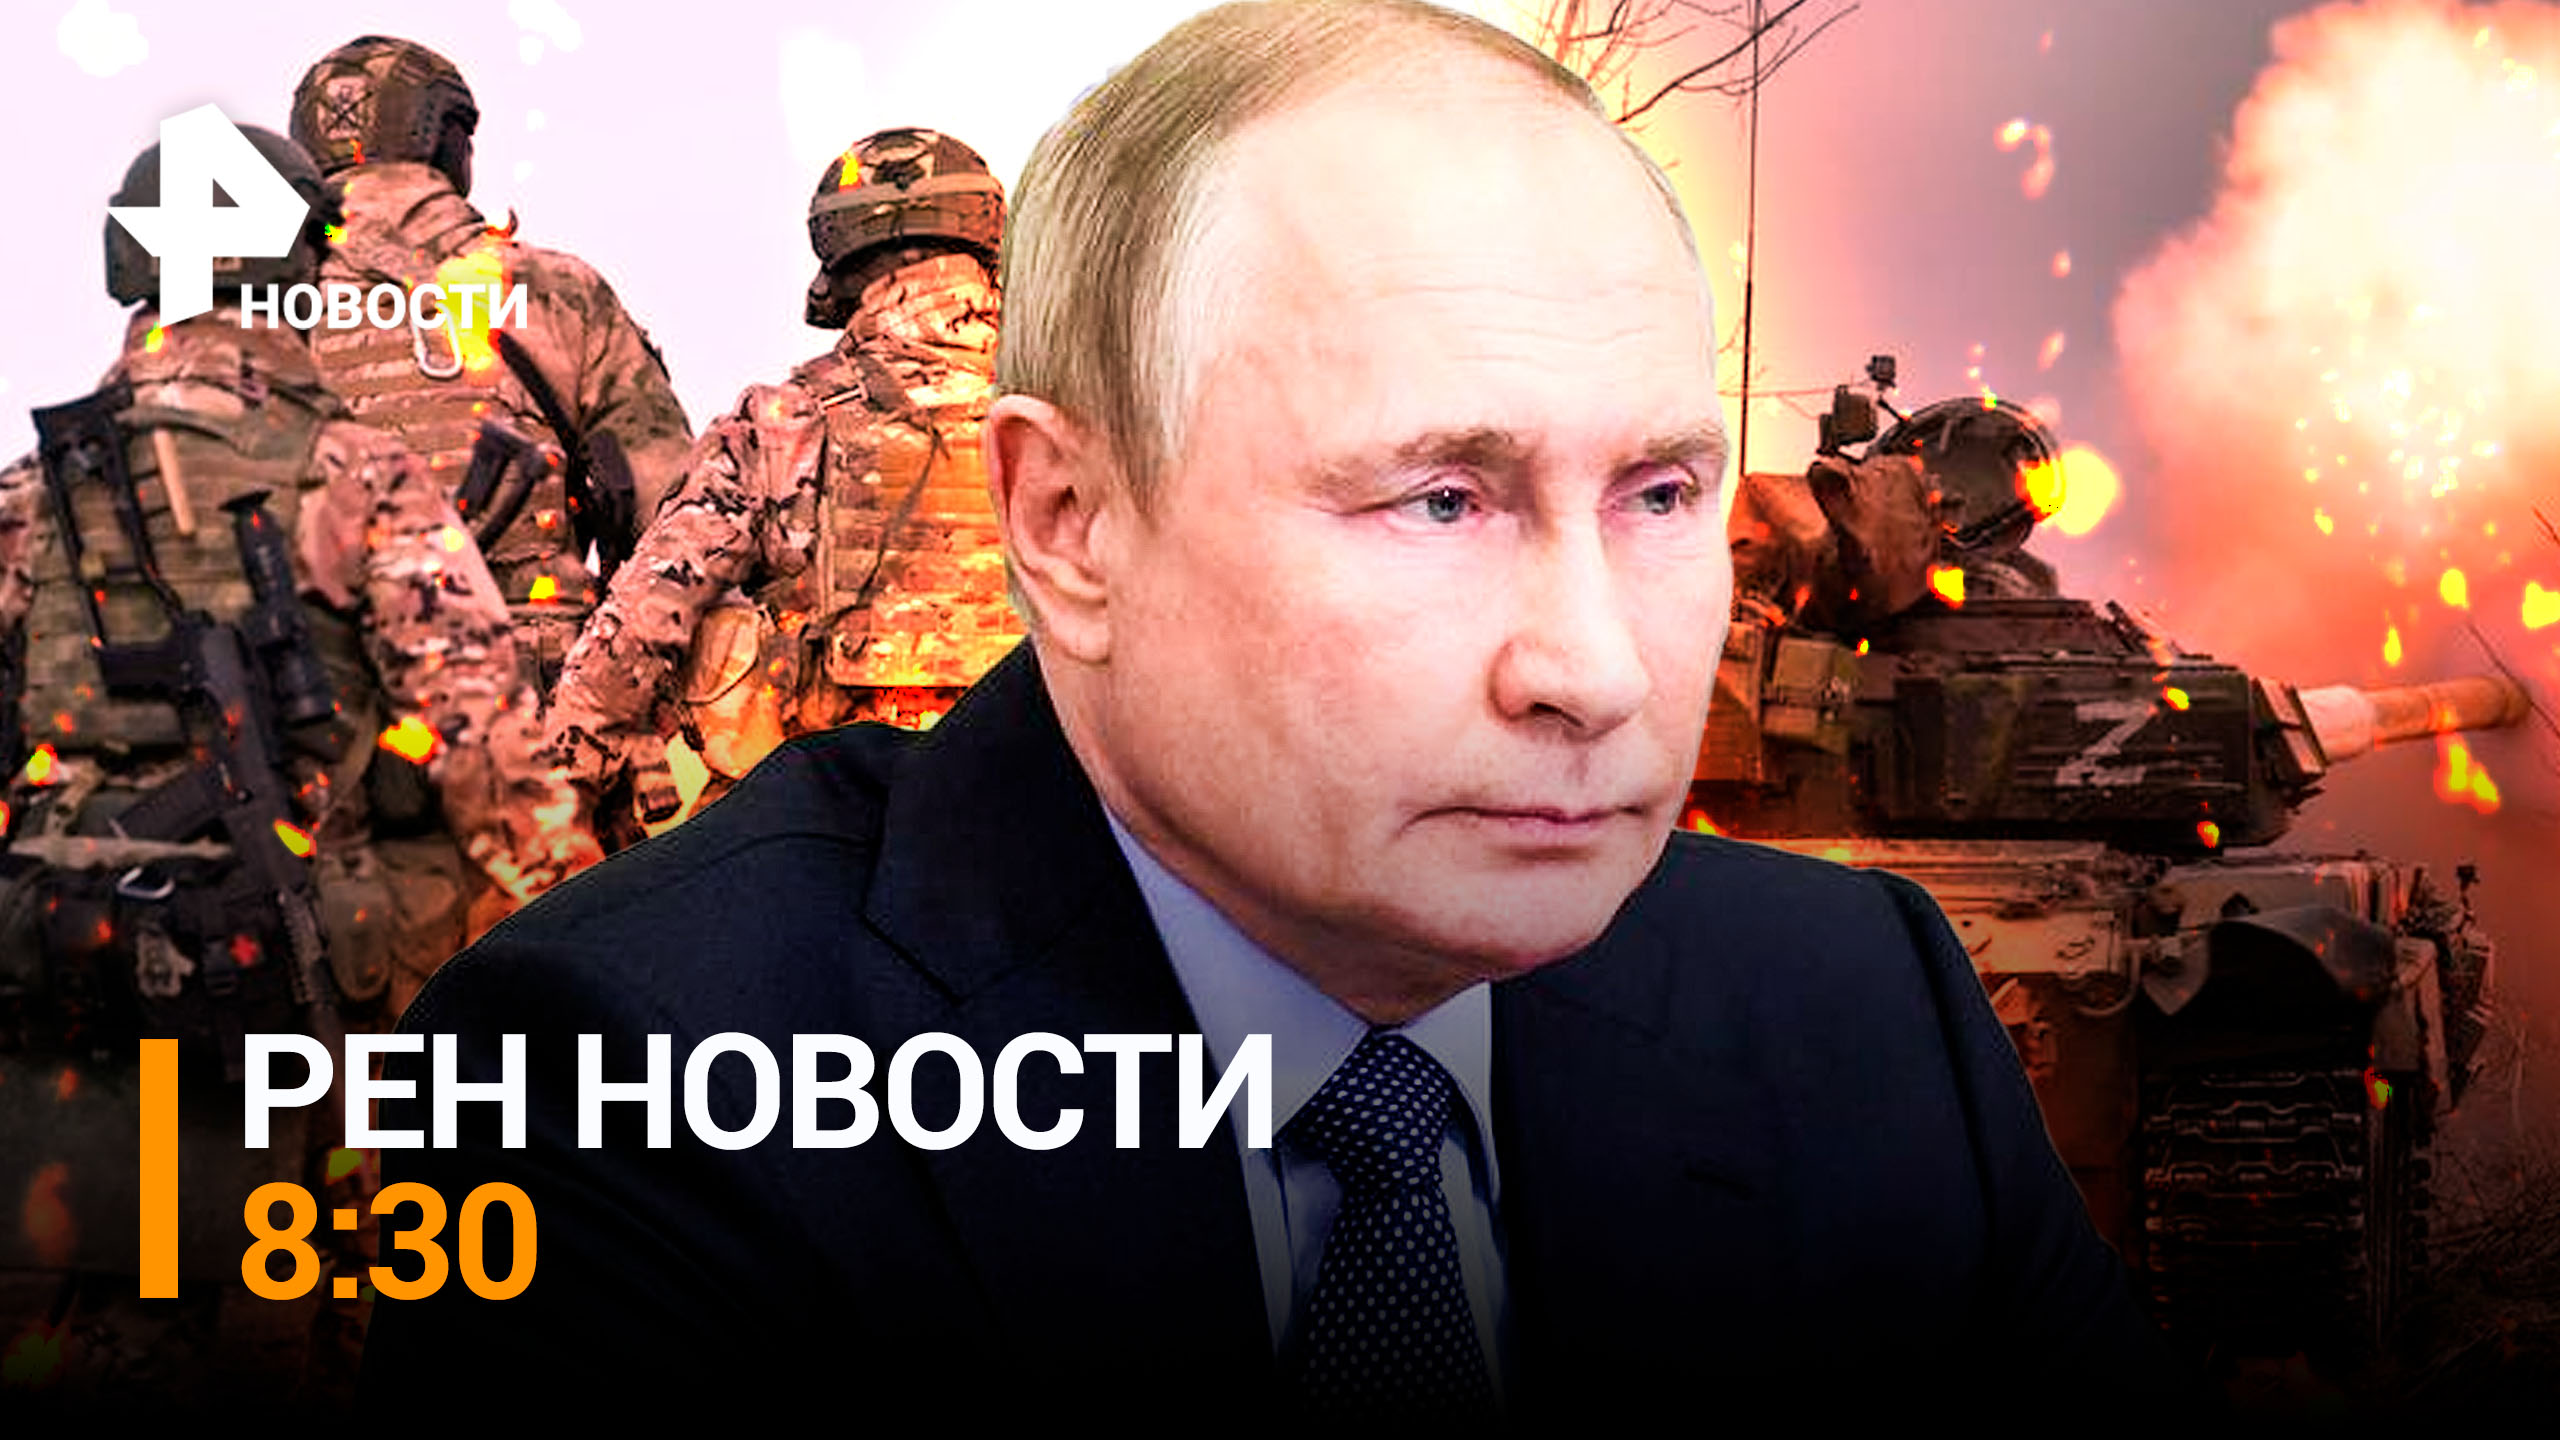 Внезапная проверка показала всю мощь российского оружия / РЕН НОВОСТИ 8:30 от 17.04.23